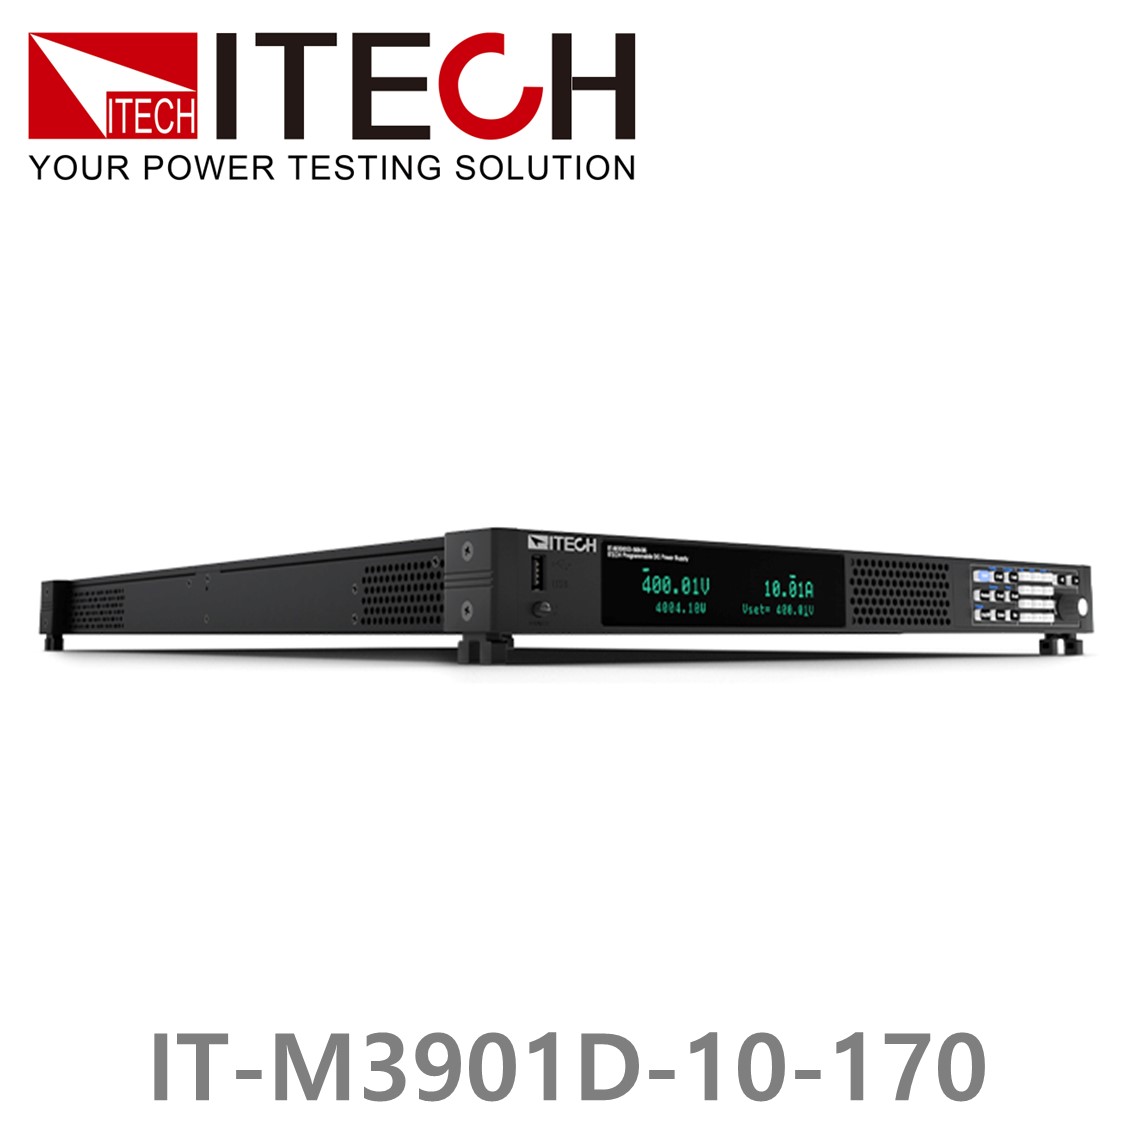 [ ITECH ] IT-M3901D-10-170 양방향 프로그래머블 DC전원공급기, DC파워서플라이